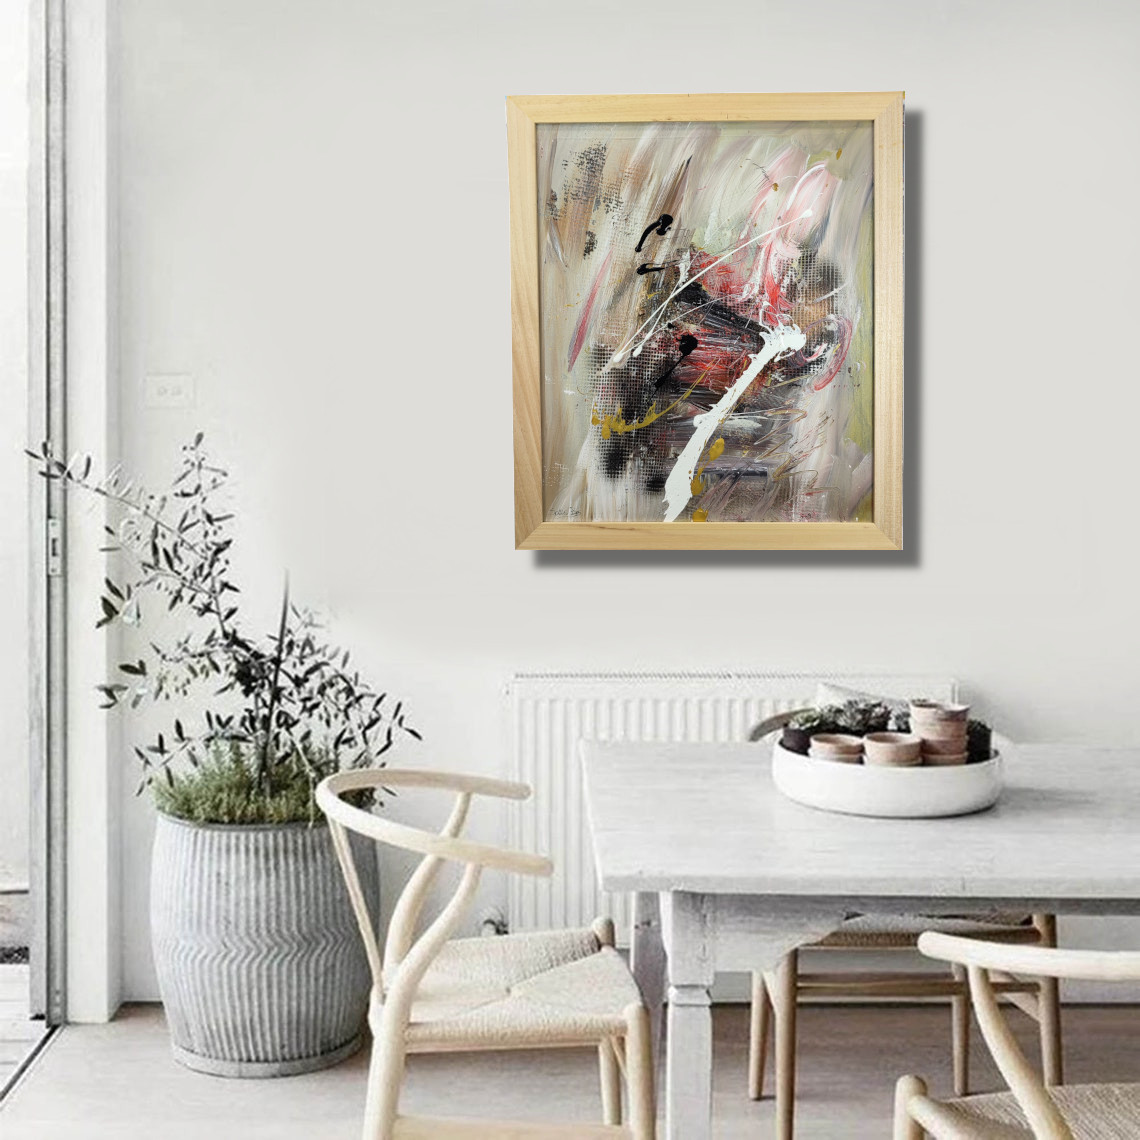 dipinti astratti per soggiorno c880  - Quali sono le tendenze attuali nel design dei quadri per il soggiorno?